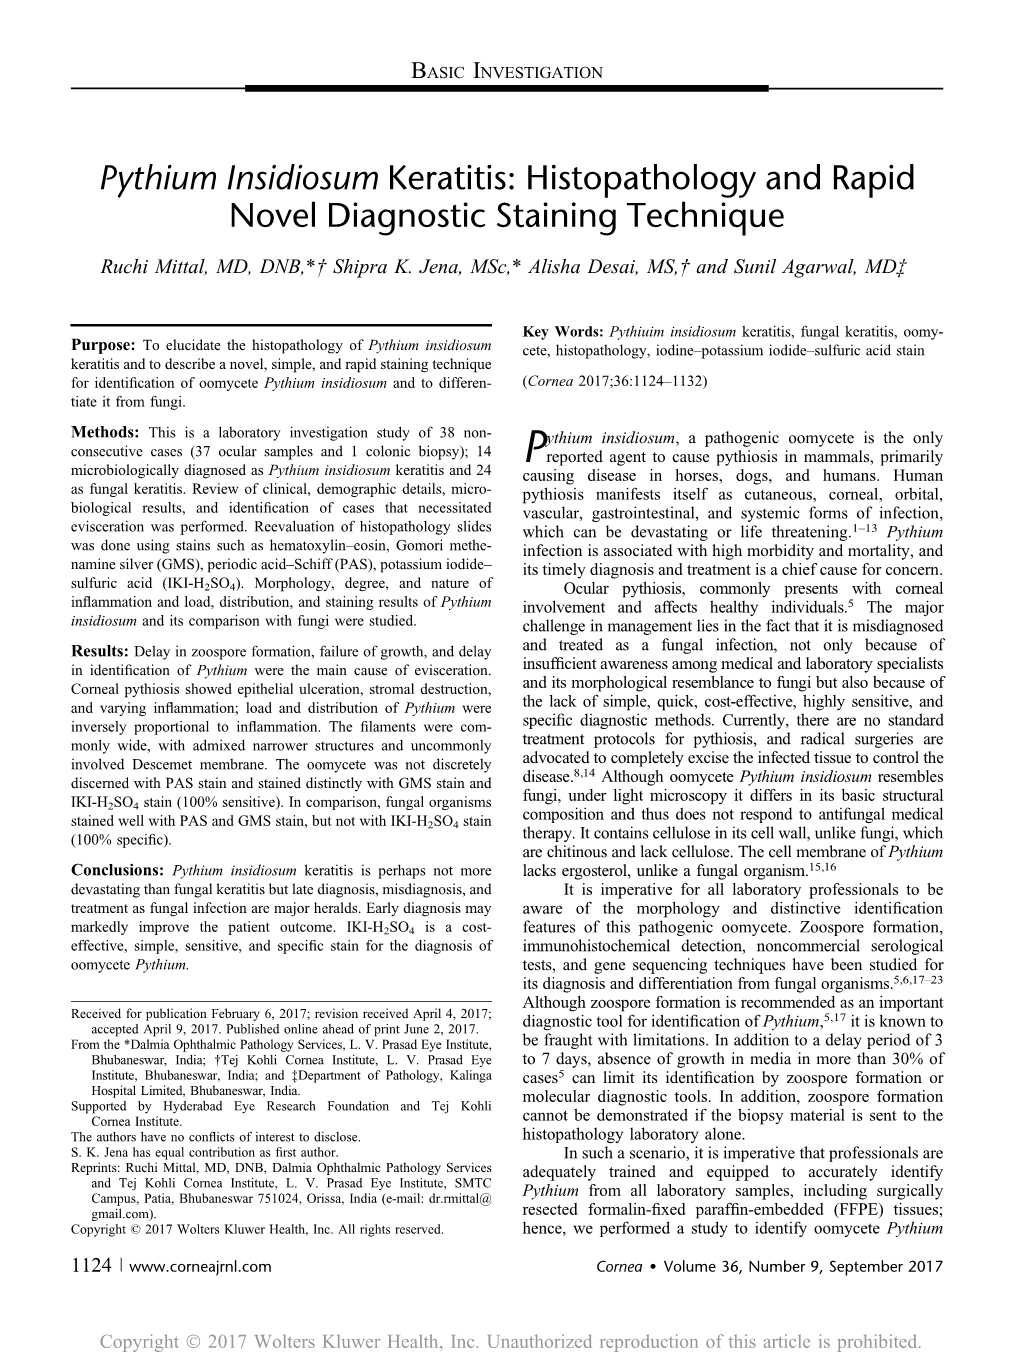 Pythium Insidiosum Keratitis: Histopathology and Rapid Novel Diagnostic Staining Technique